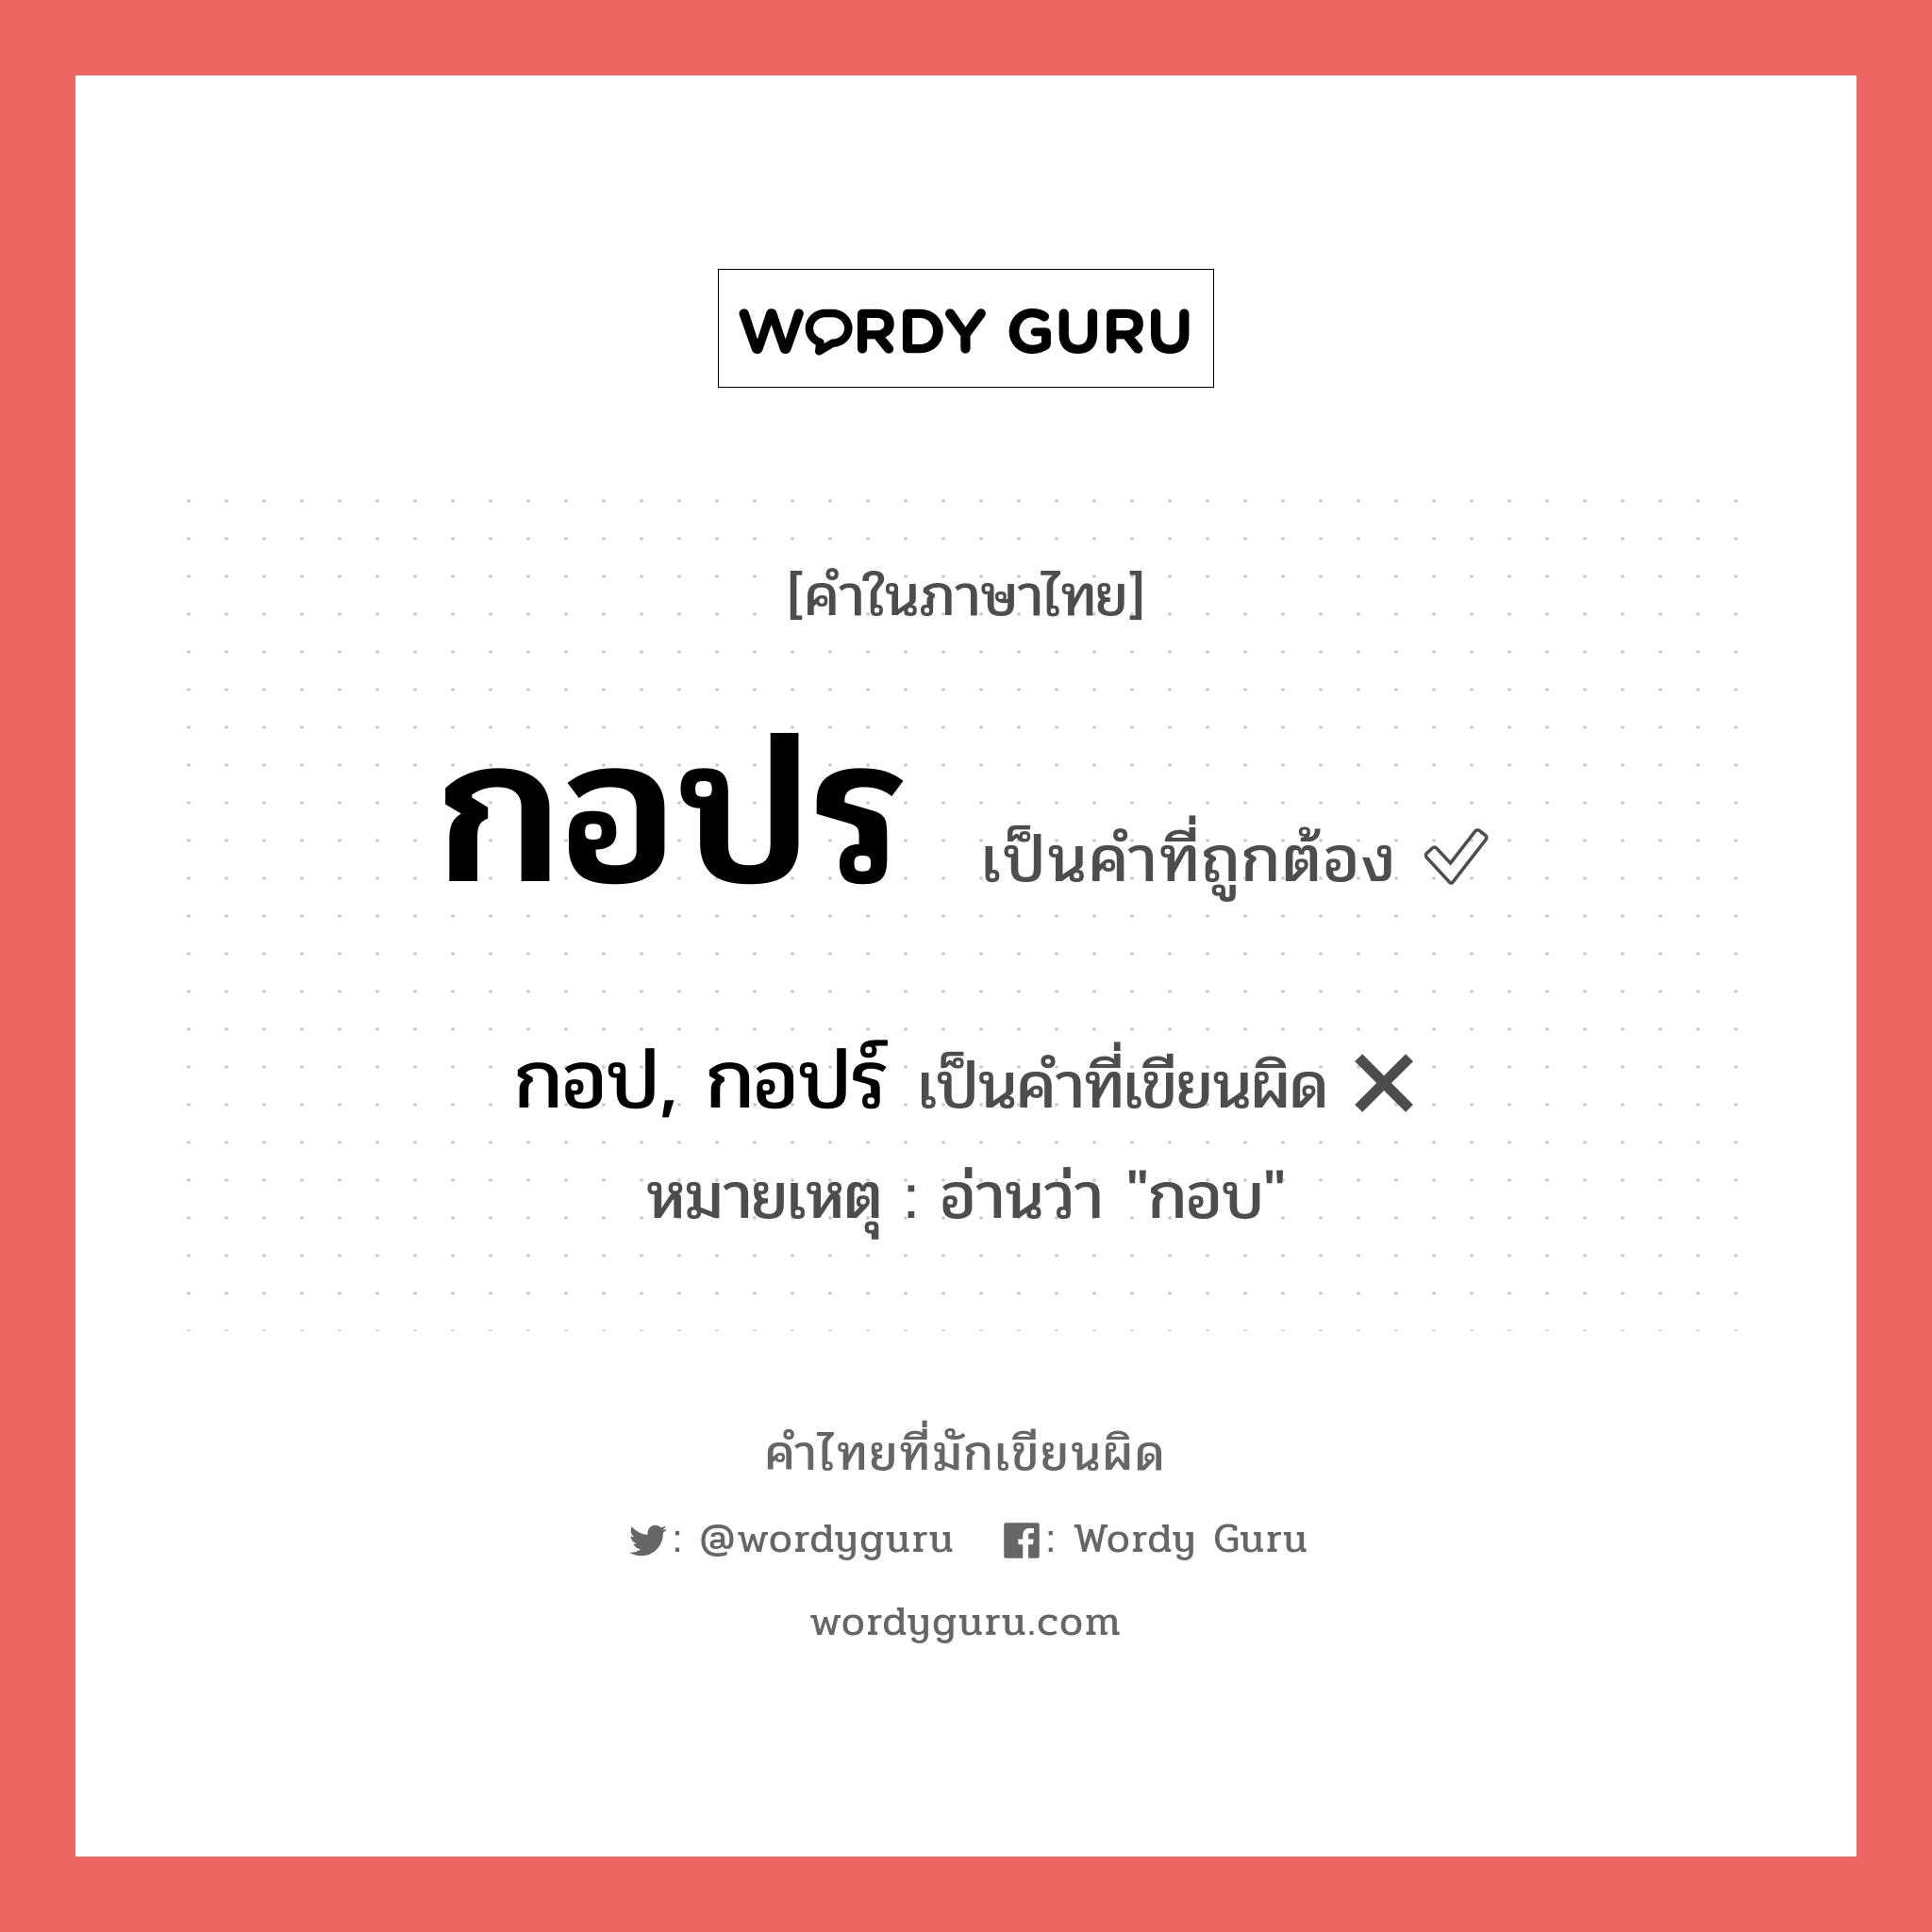 กอปร หรือ กอป, กอปร์ คำไหนเขียนถูก?, คำในภาษาไทยที่มักเขียนผิด กอปร คำที่ผิด ❌ กอป, กอปร์ หมายเหตุ อ่านว่า "กอบ"